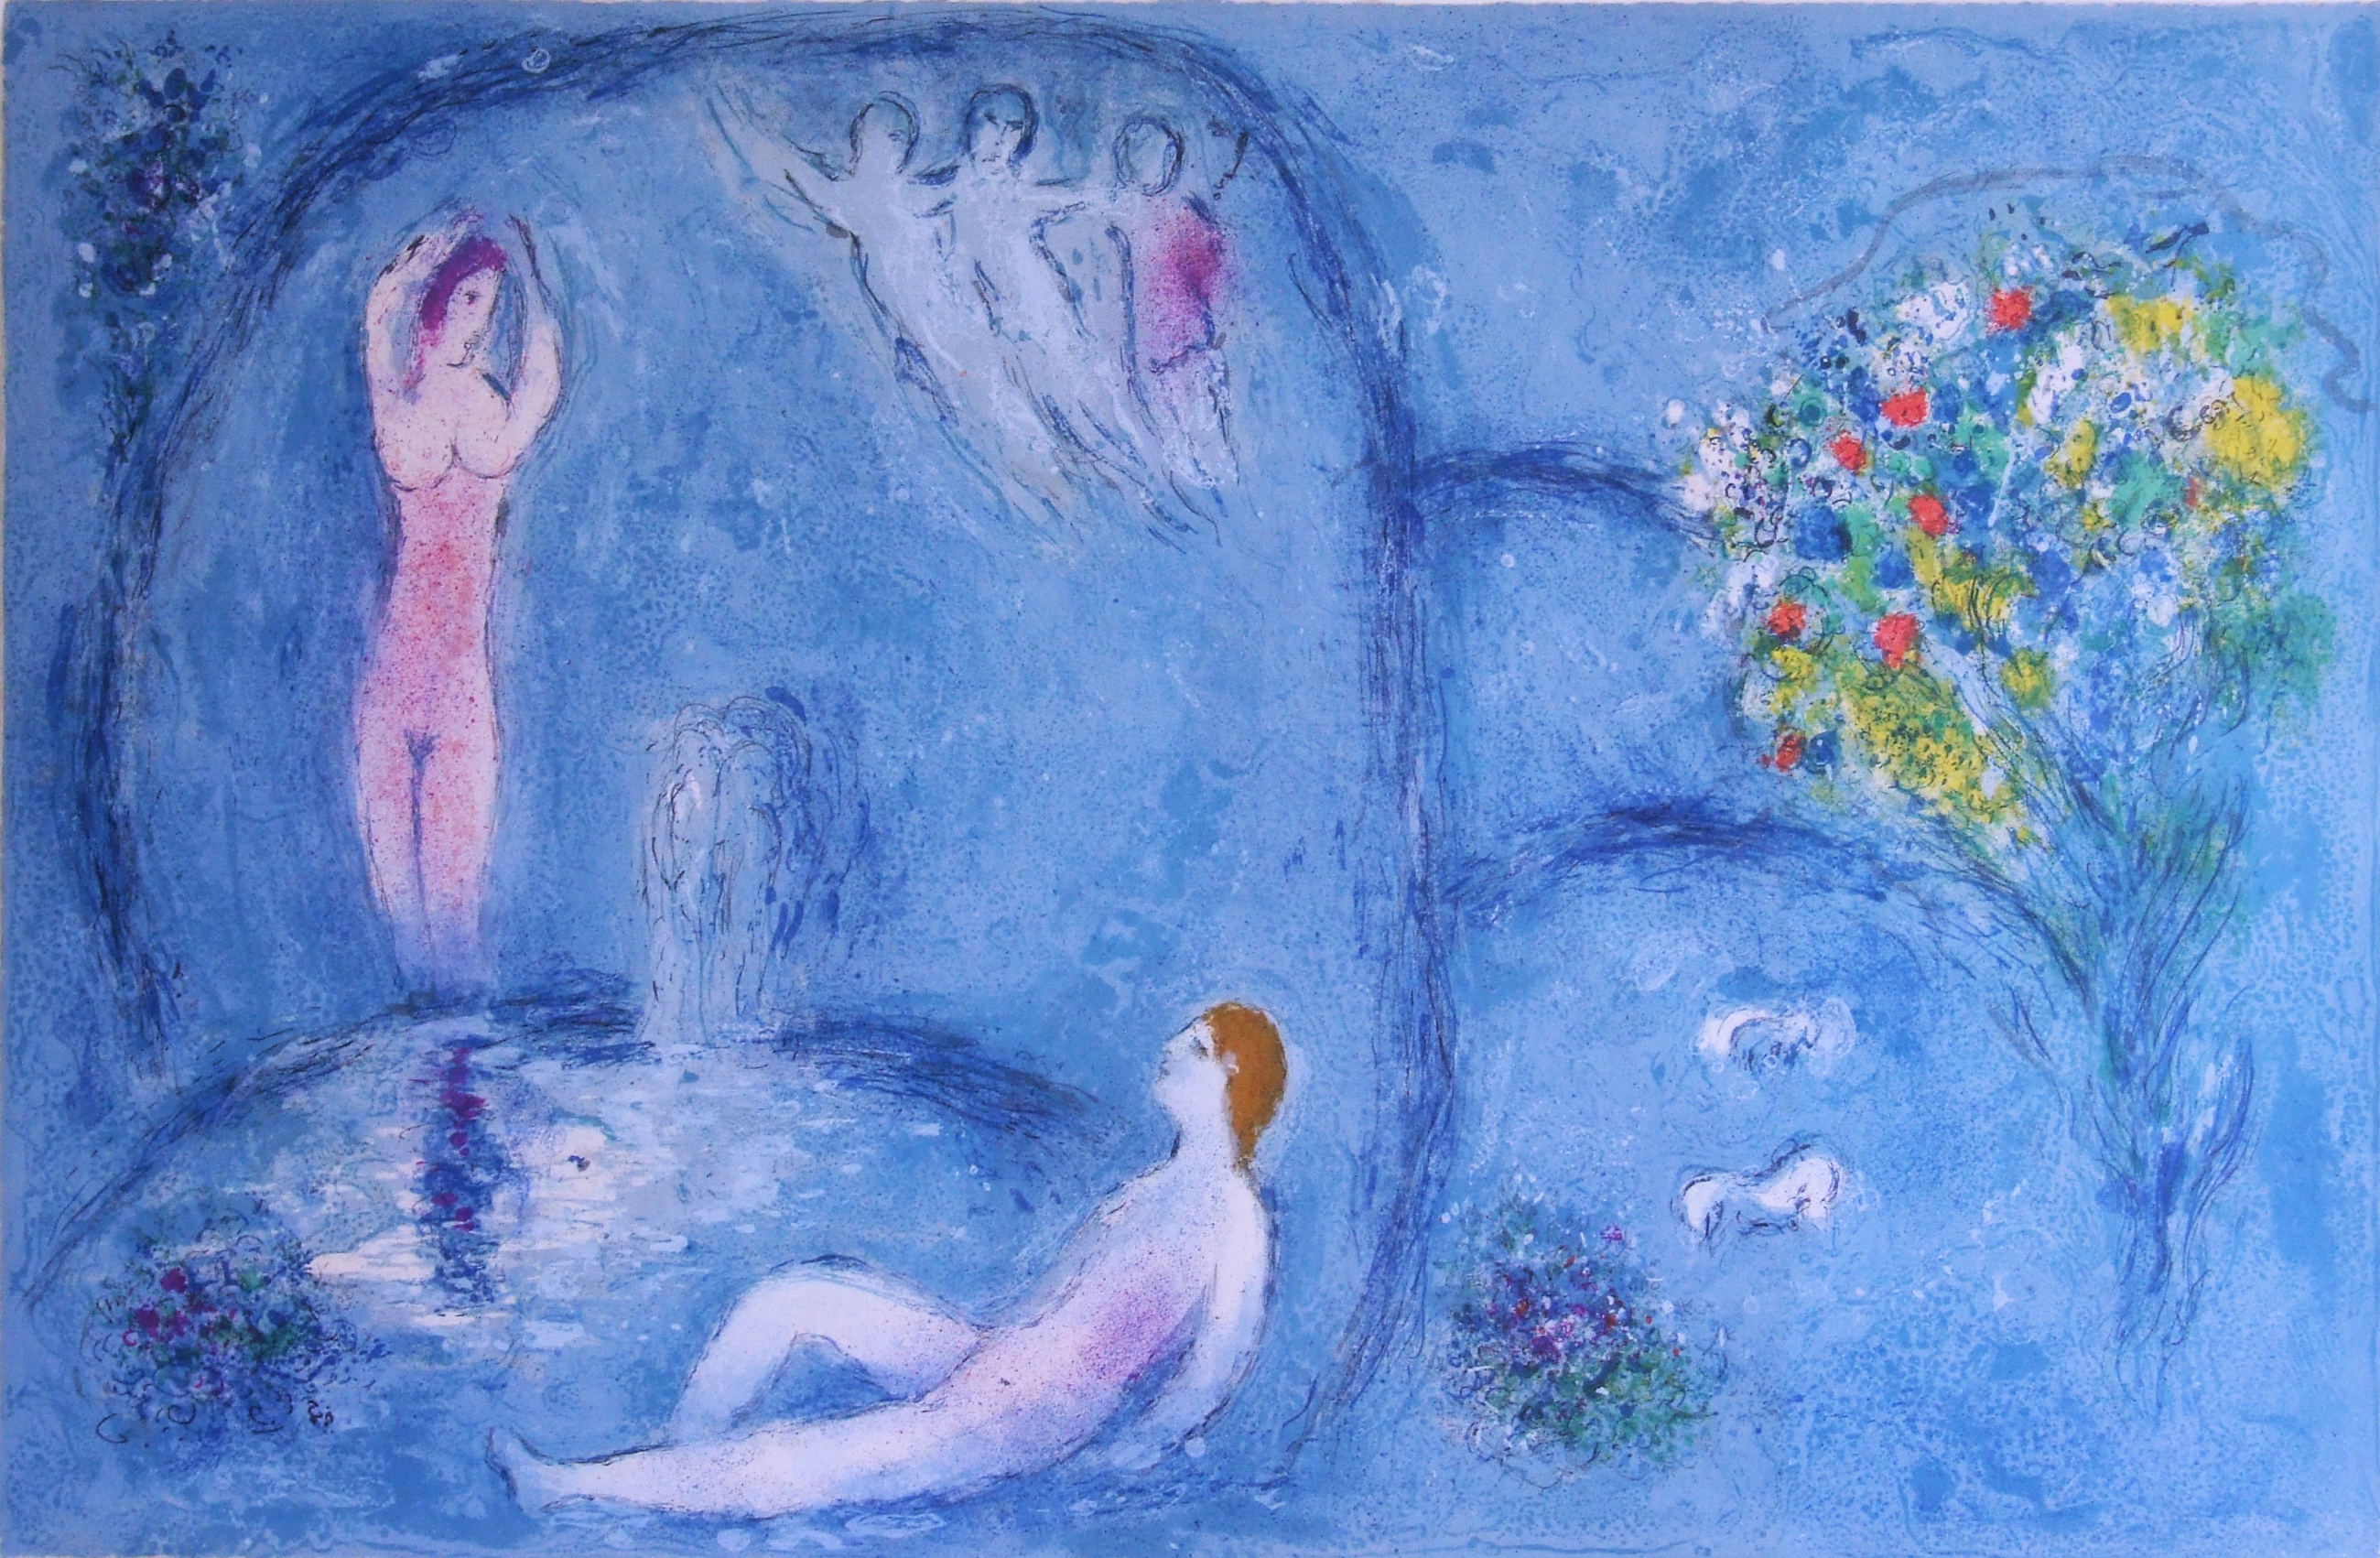  Marc Chagall: Die Felsengrotte der Nymphen, 1961 (Mourlot 321),© VG Bild-Kunst, Bonn 2019 